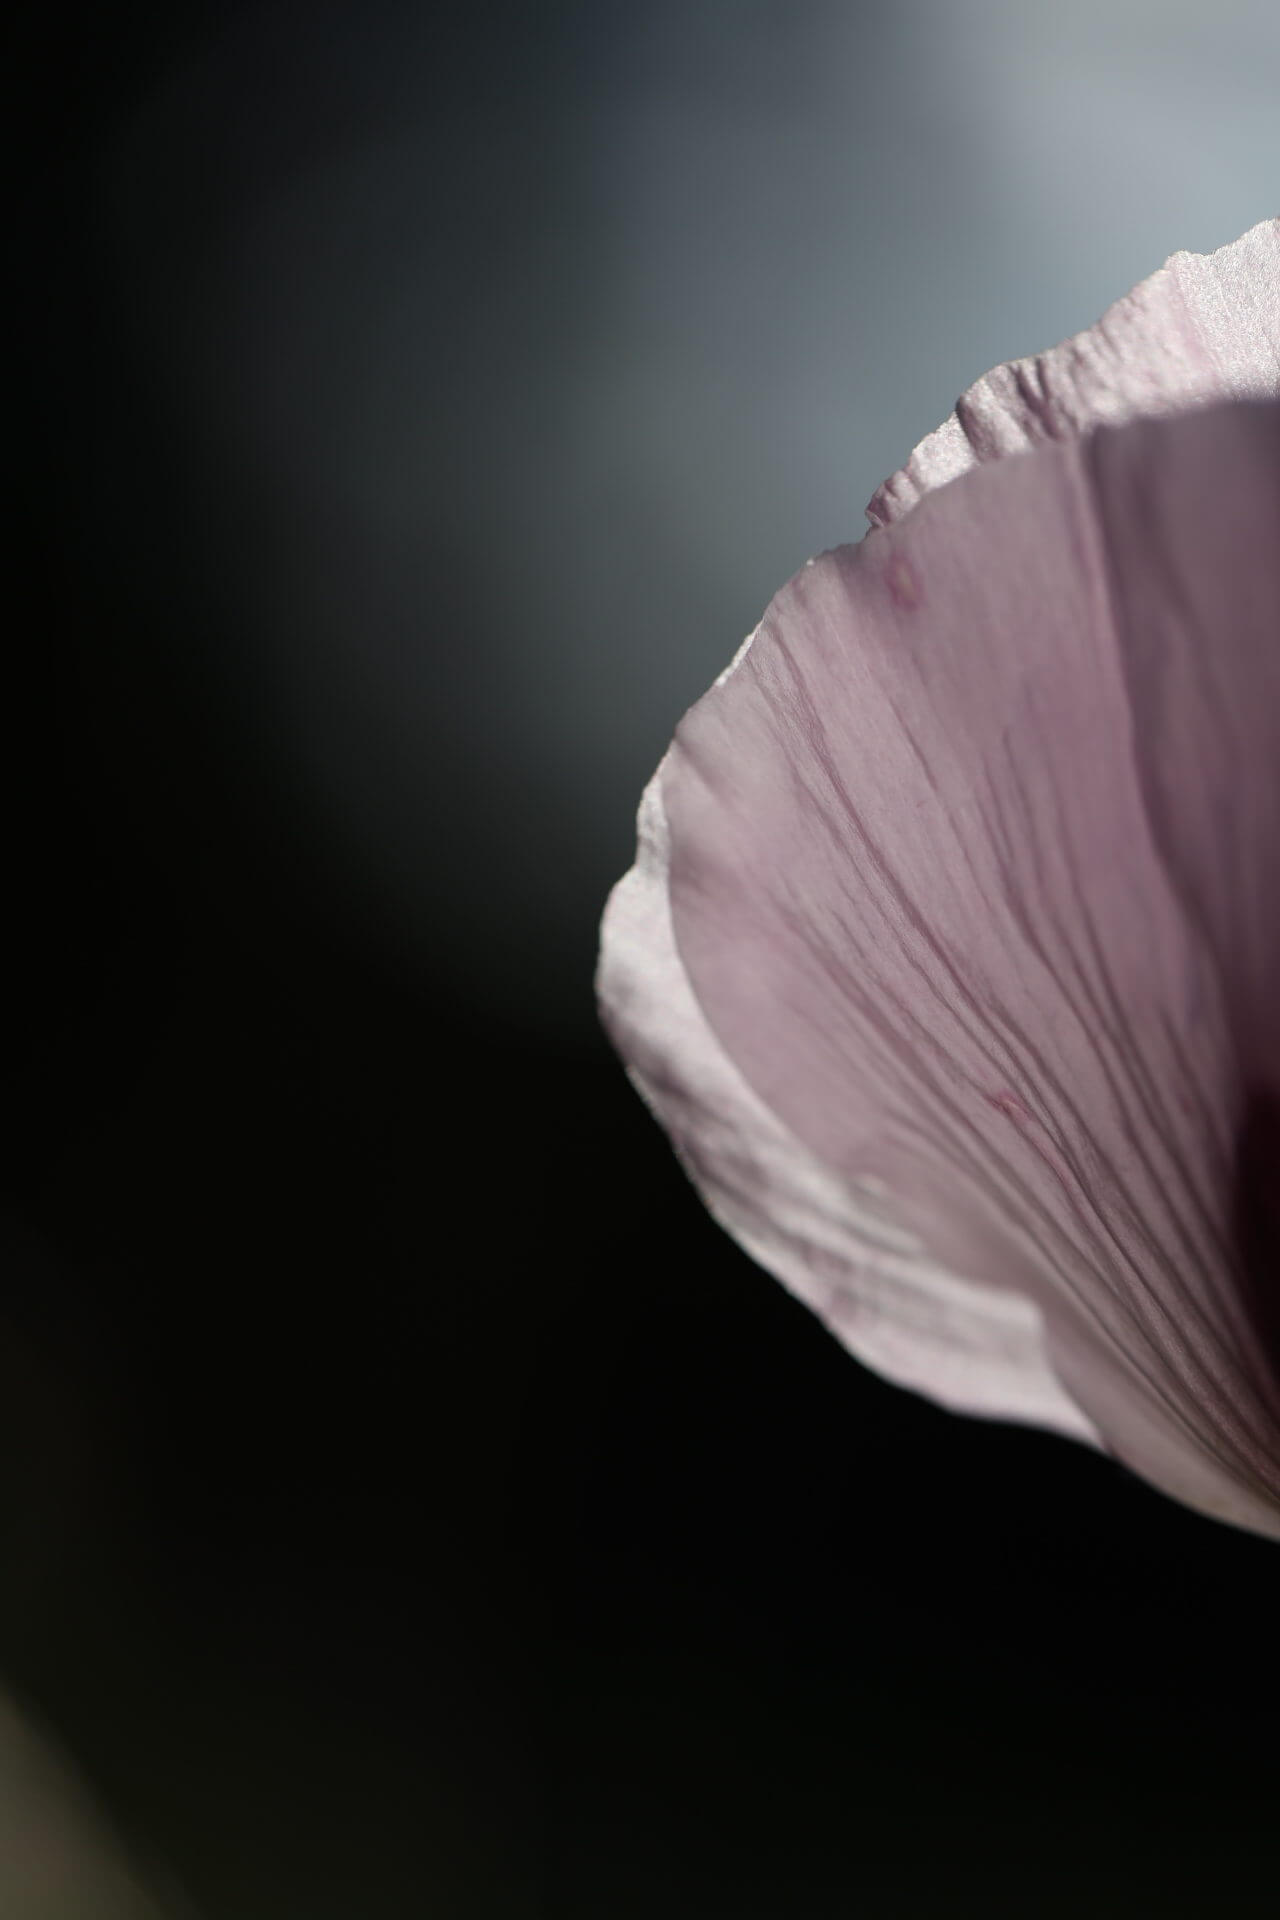 a pink Poppy petal on a black background